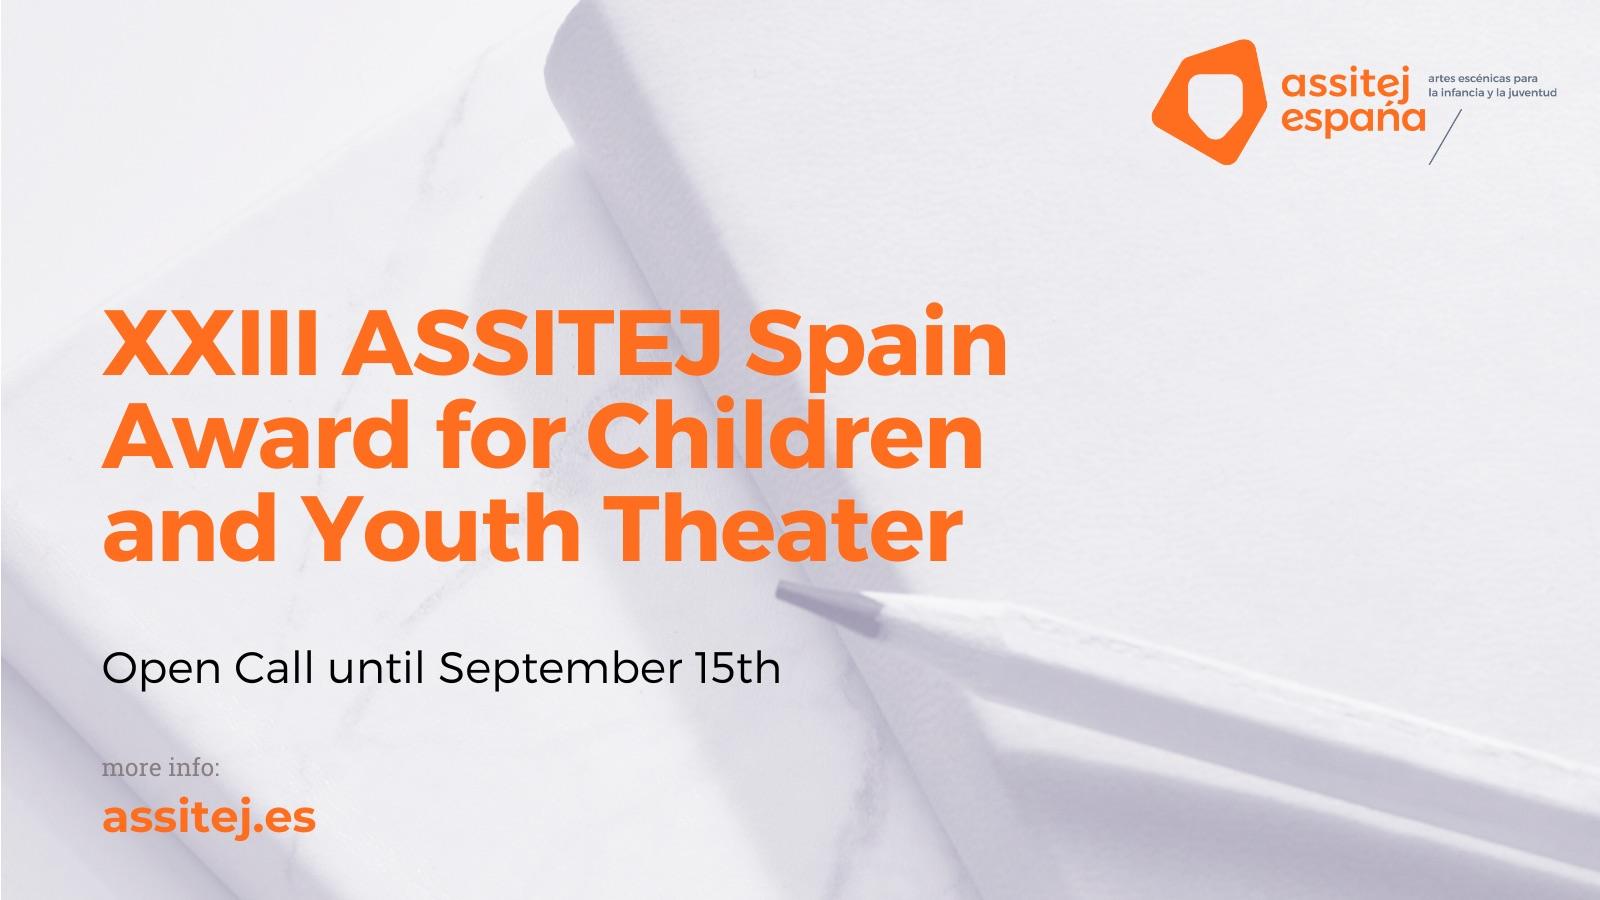 XXIII ASSITEJ Премия Испании для детских и юношеских театров